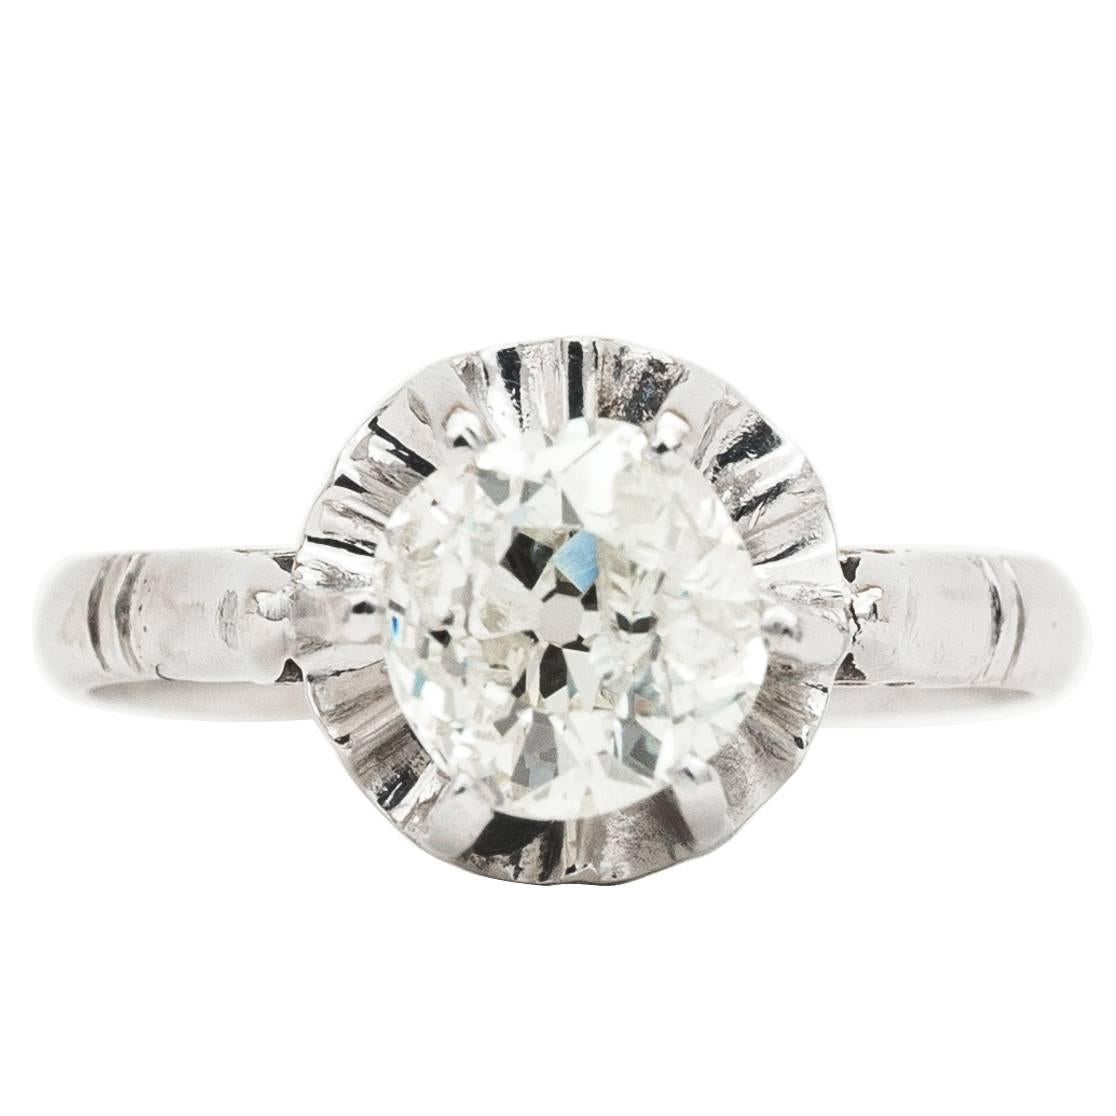 French Art Deco 0.91ct Diamond Ring in Platinum 1920's Parisian